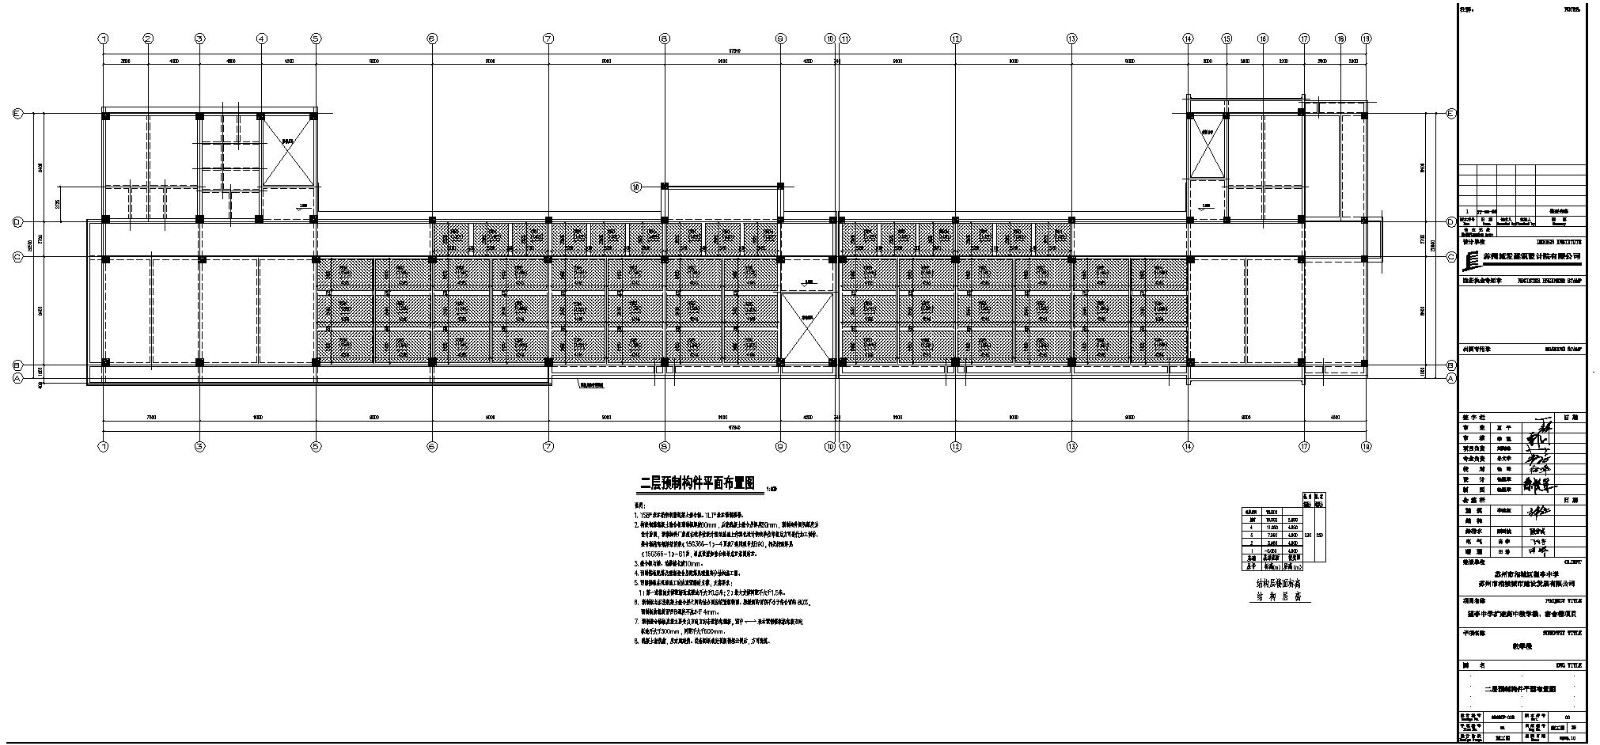 望亭中学扩建高中教学楼宿舍楼项目装配式预制构件设计图